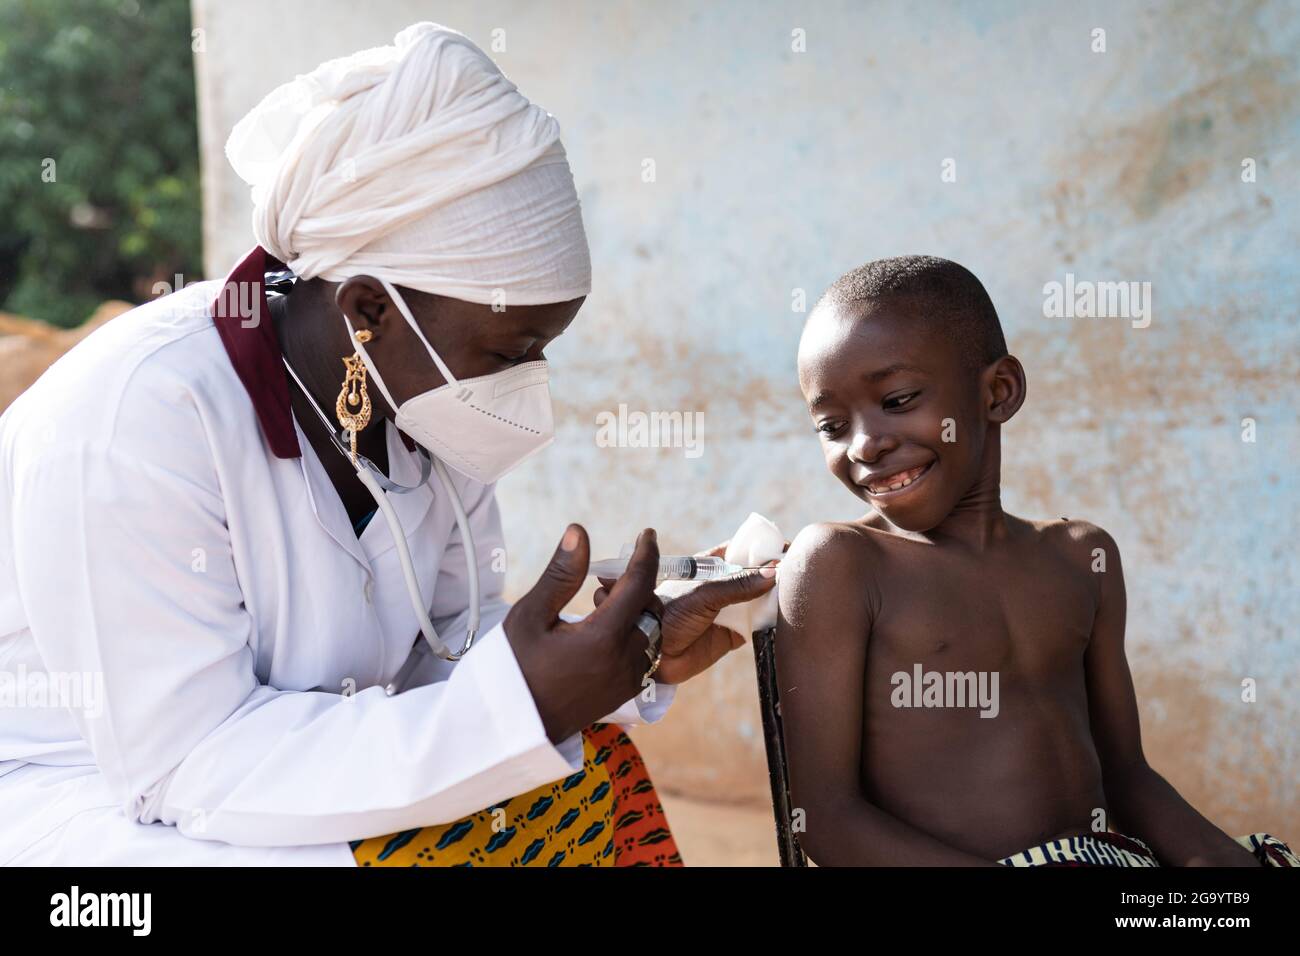 In questa immagine un'infermiera nera con maschera facciale sta iniettando una dose di vaccino ad un bravo studente sorridente in un ambiente ospedaliero africano Foto Stock